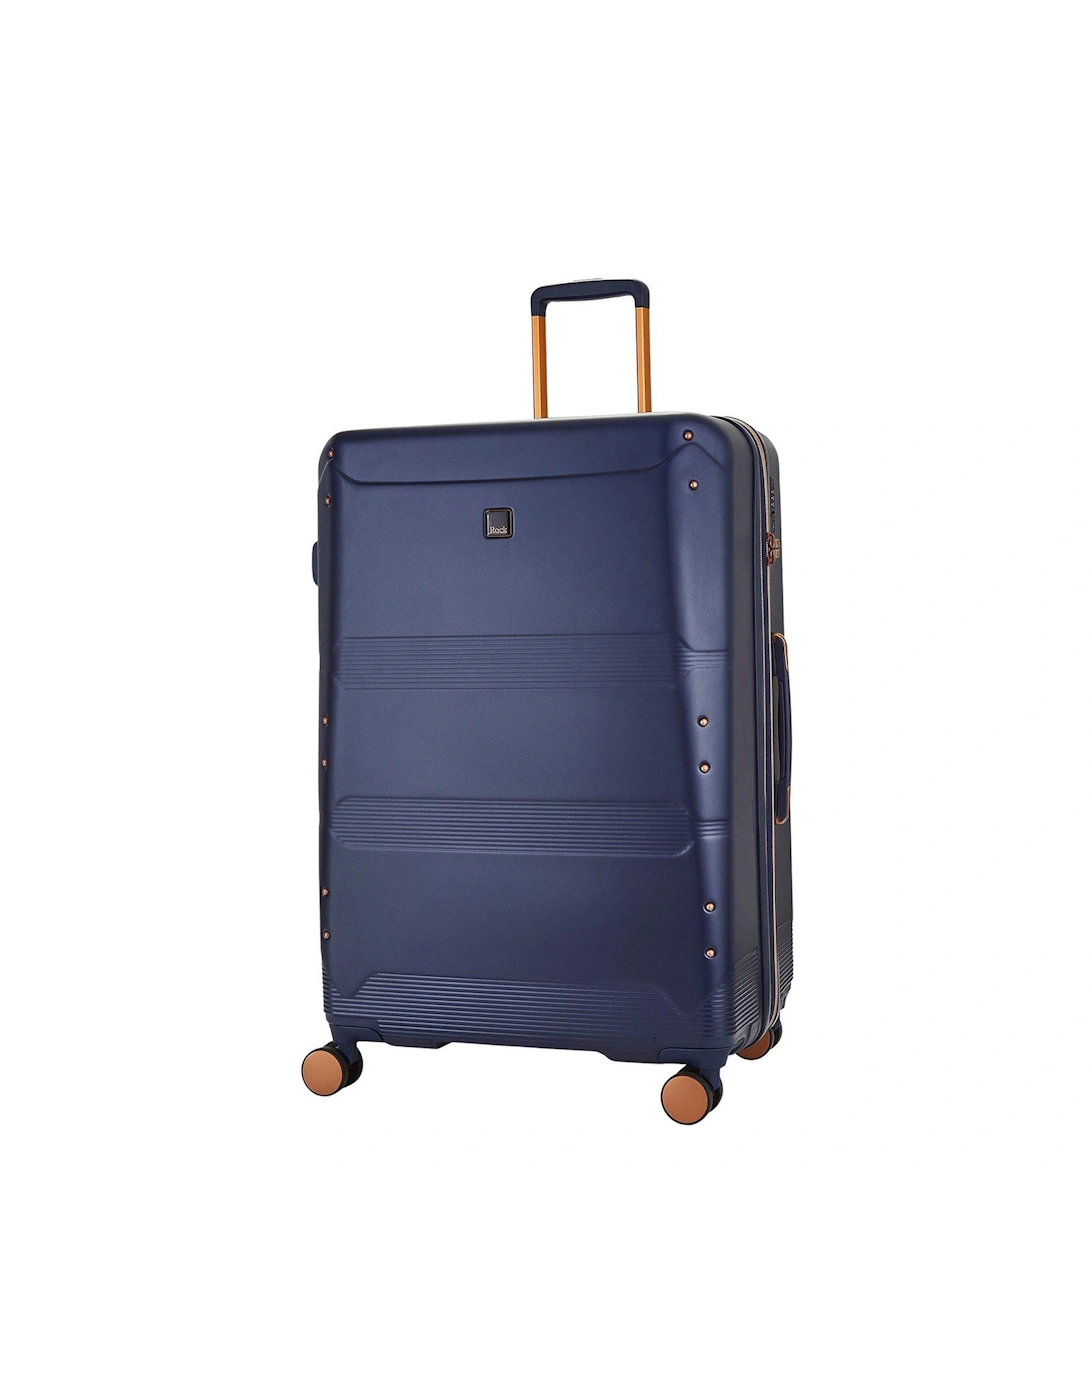 Mayfair 8 Wheel Hardshell Large Suitcase - Navy, 2 of 1